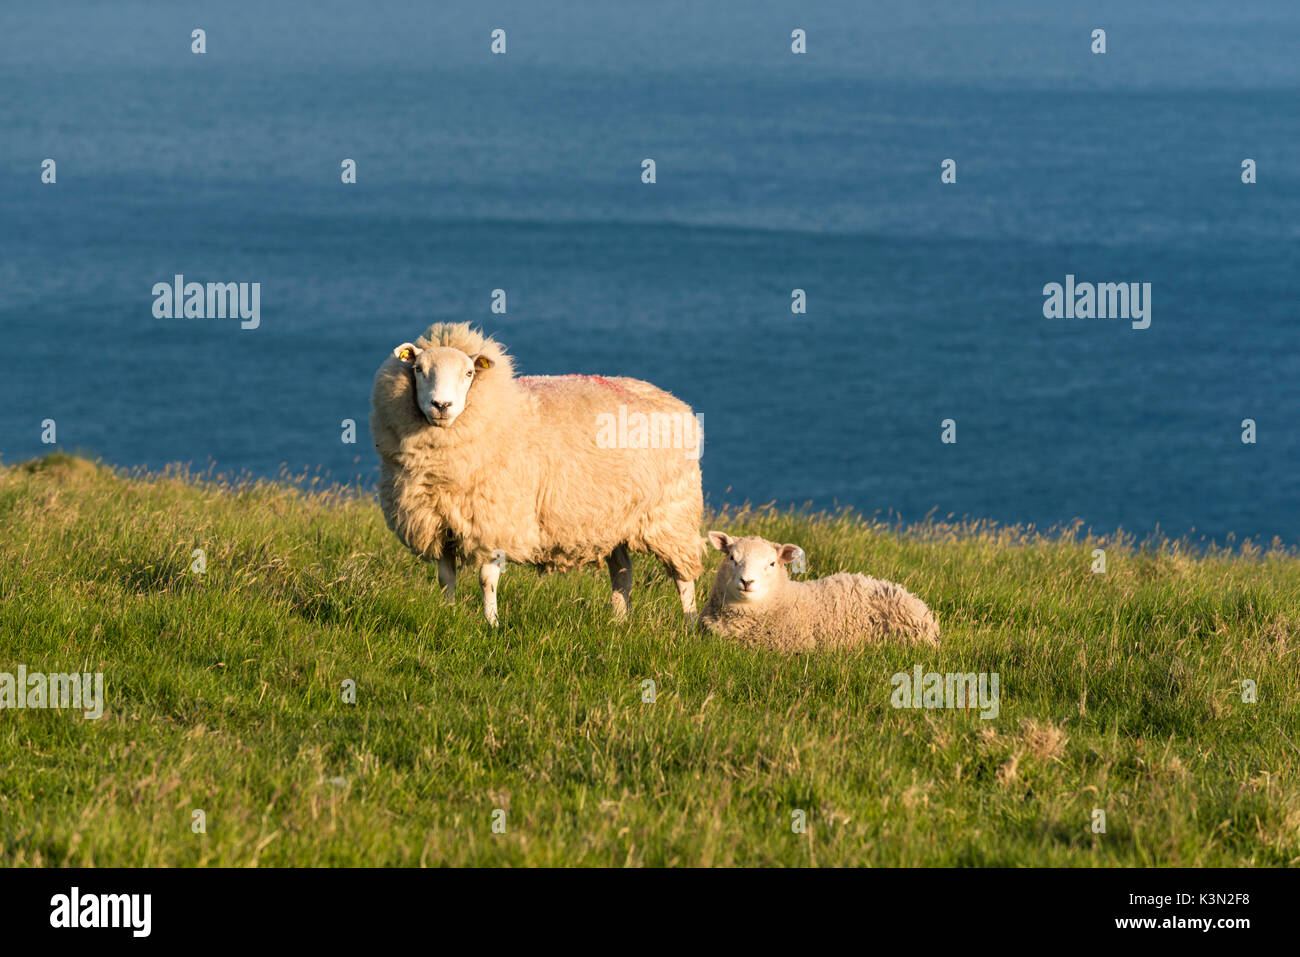 Portmagee, comté de Kerry, Munster, Irlande, province de l'Europe. Deux moutons paissant sur la colline avec l'océan Atlantique à l'arrière-plan. Banque D'Images